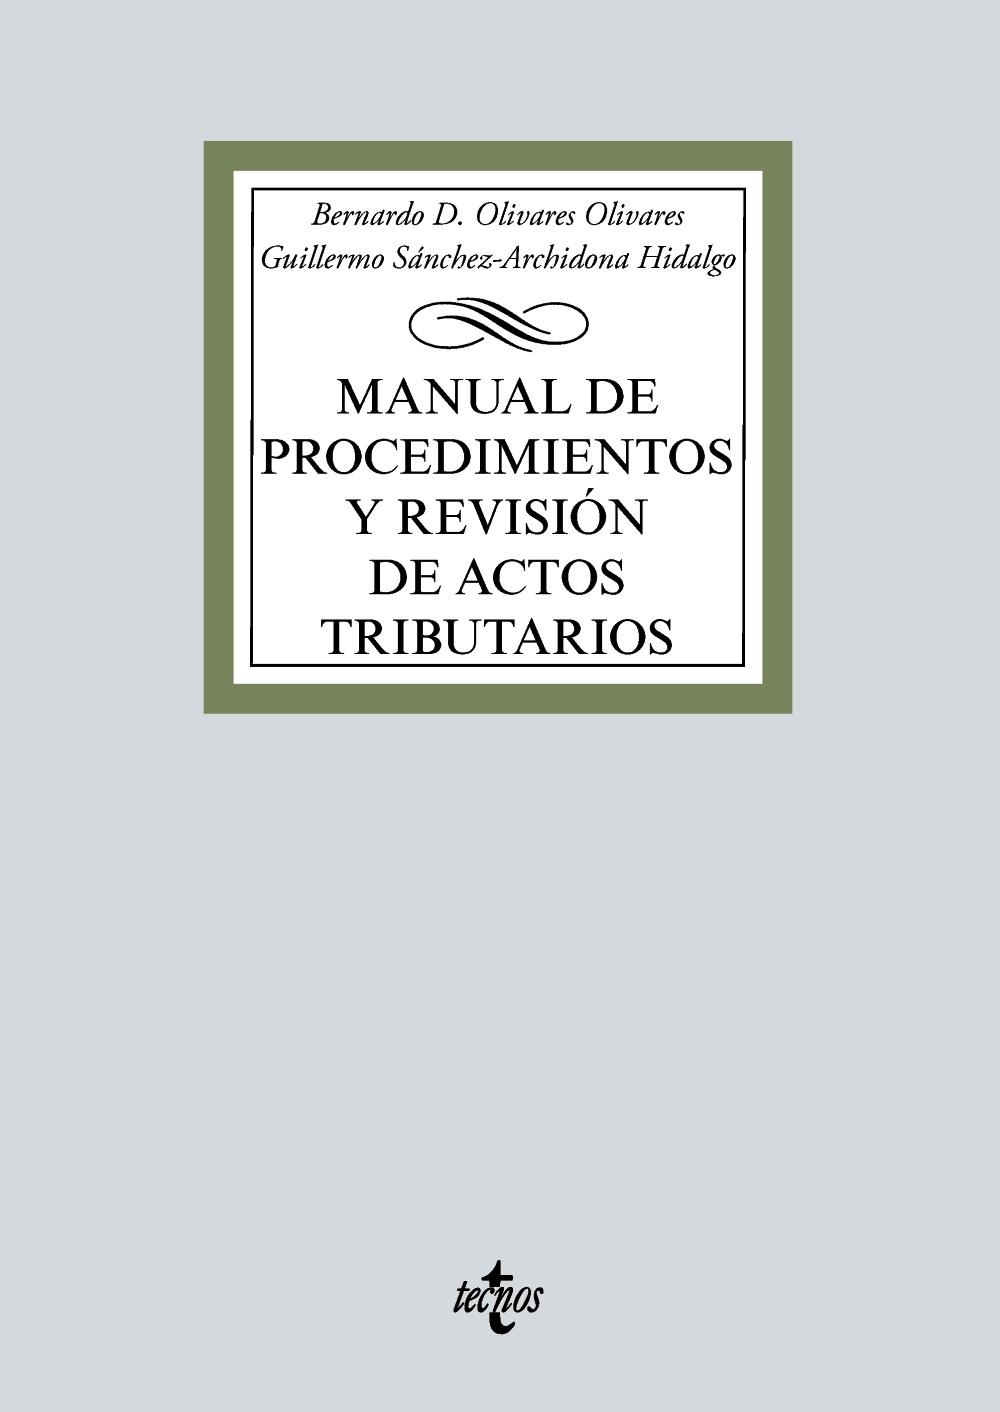 Manual de procedimientos y revisión de actos tributarios